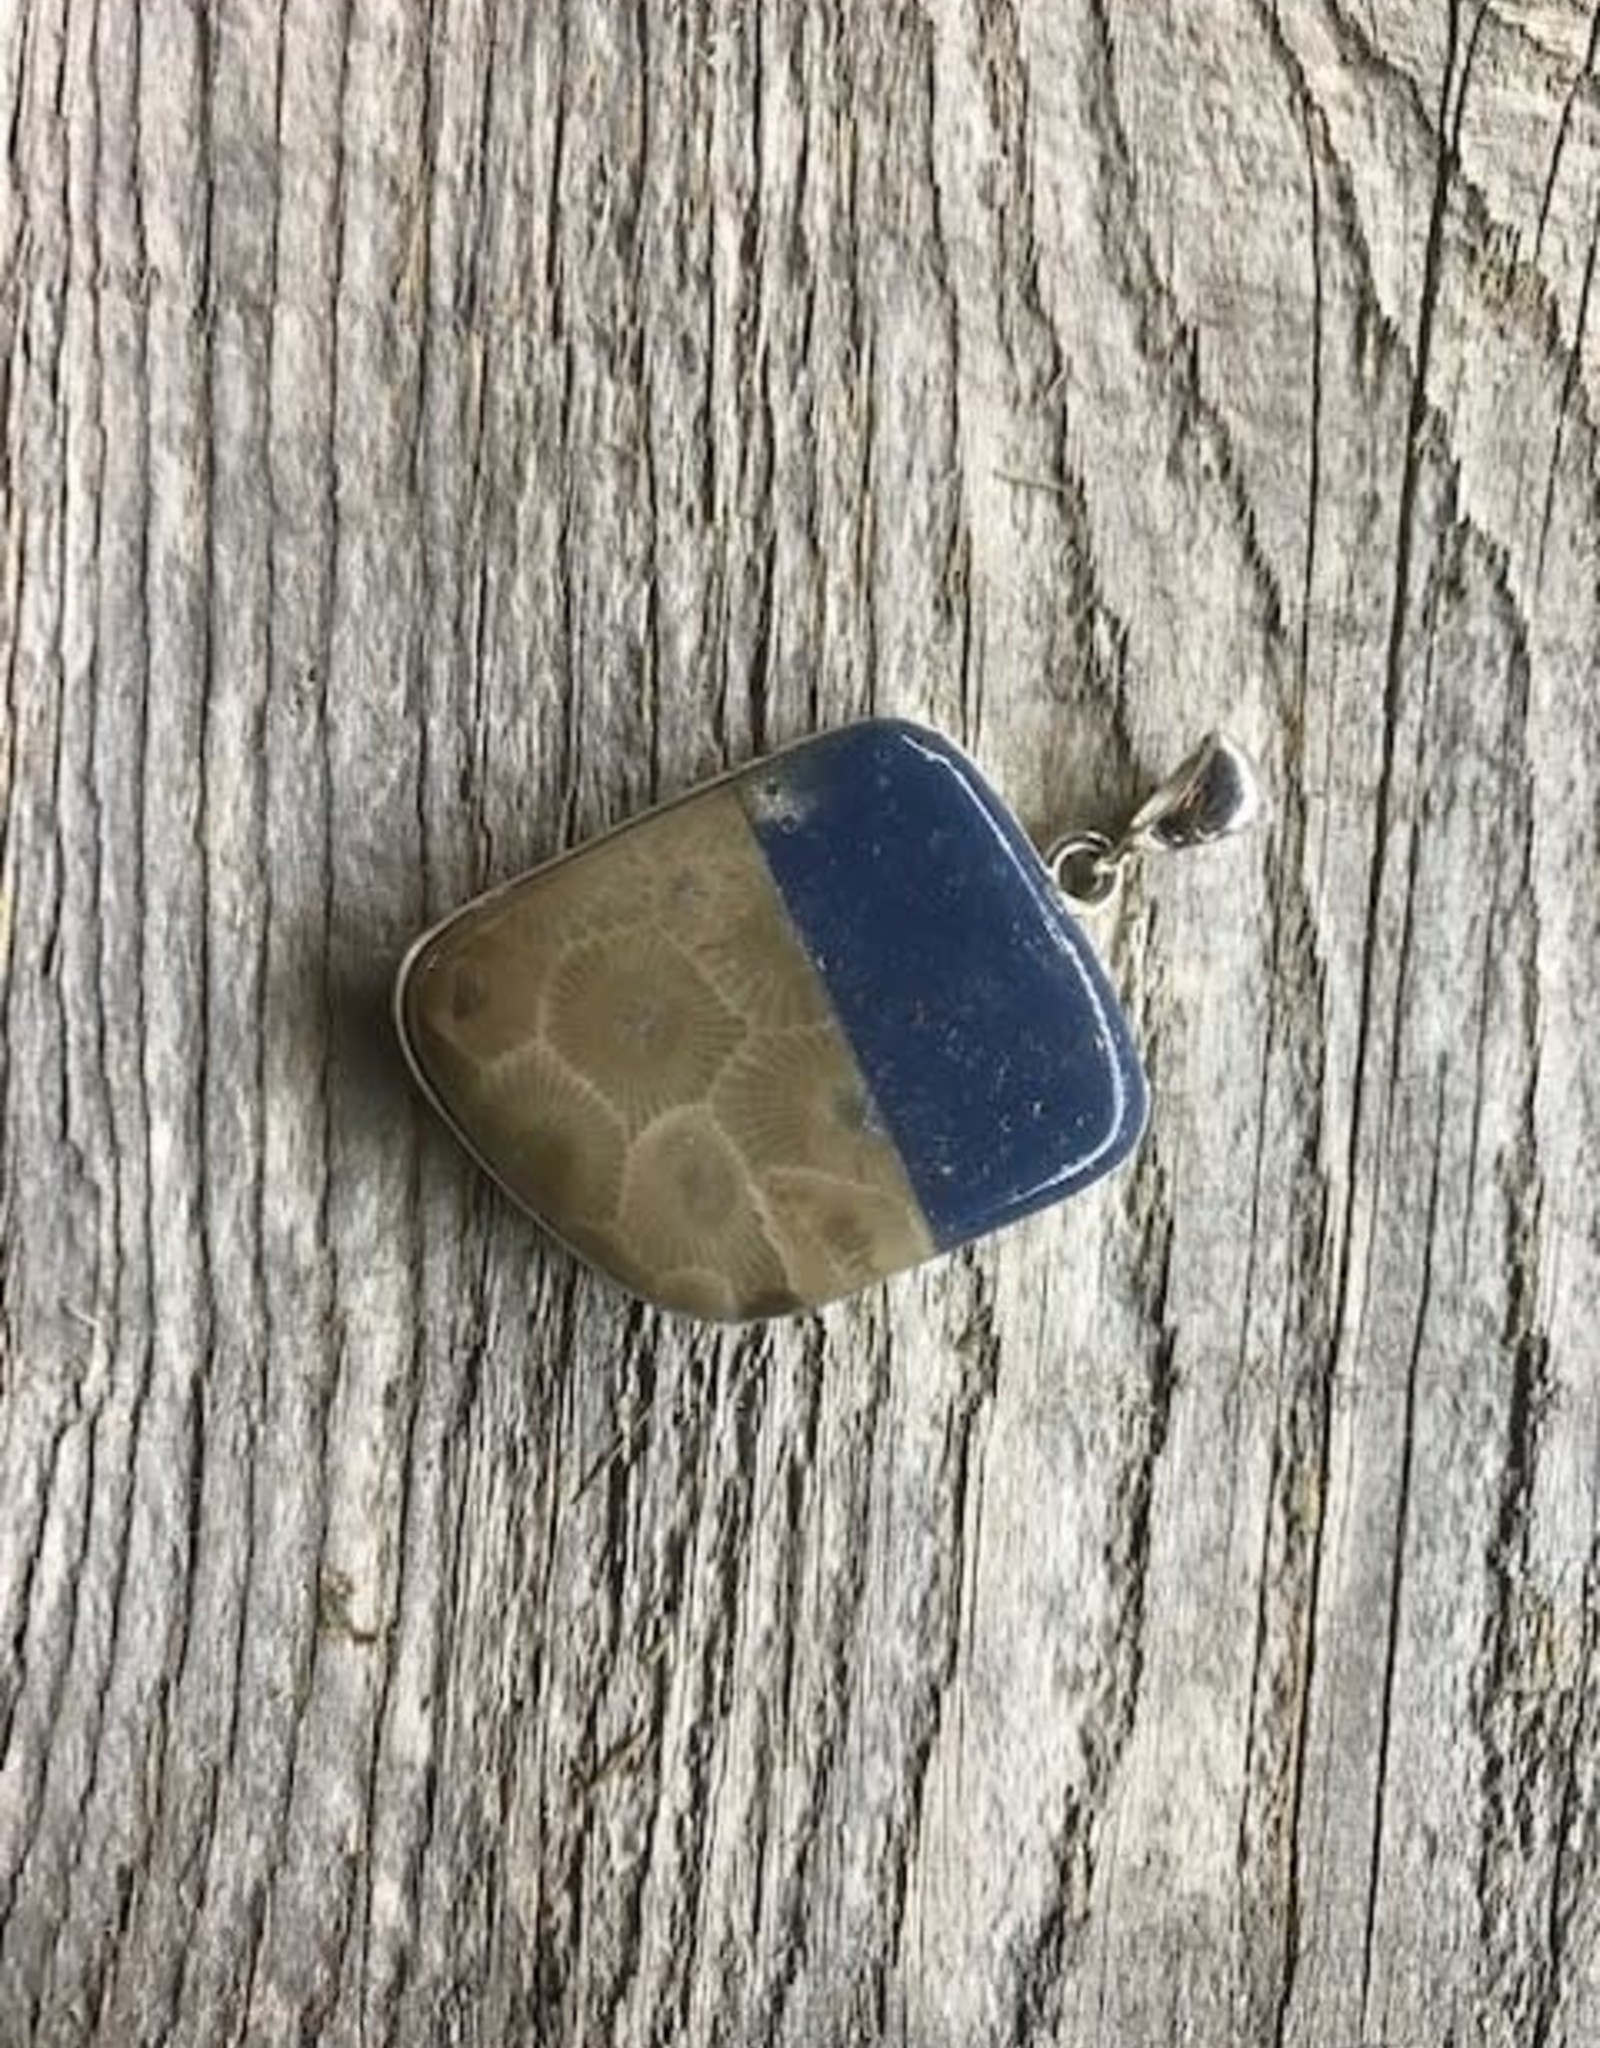 Necklace Pendant - Dual Leland Blue & Petoskey Stone